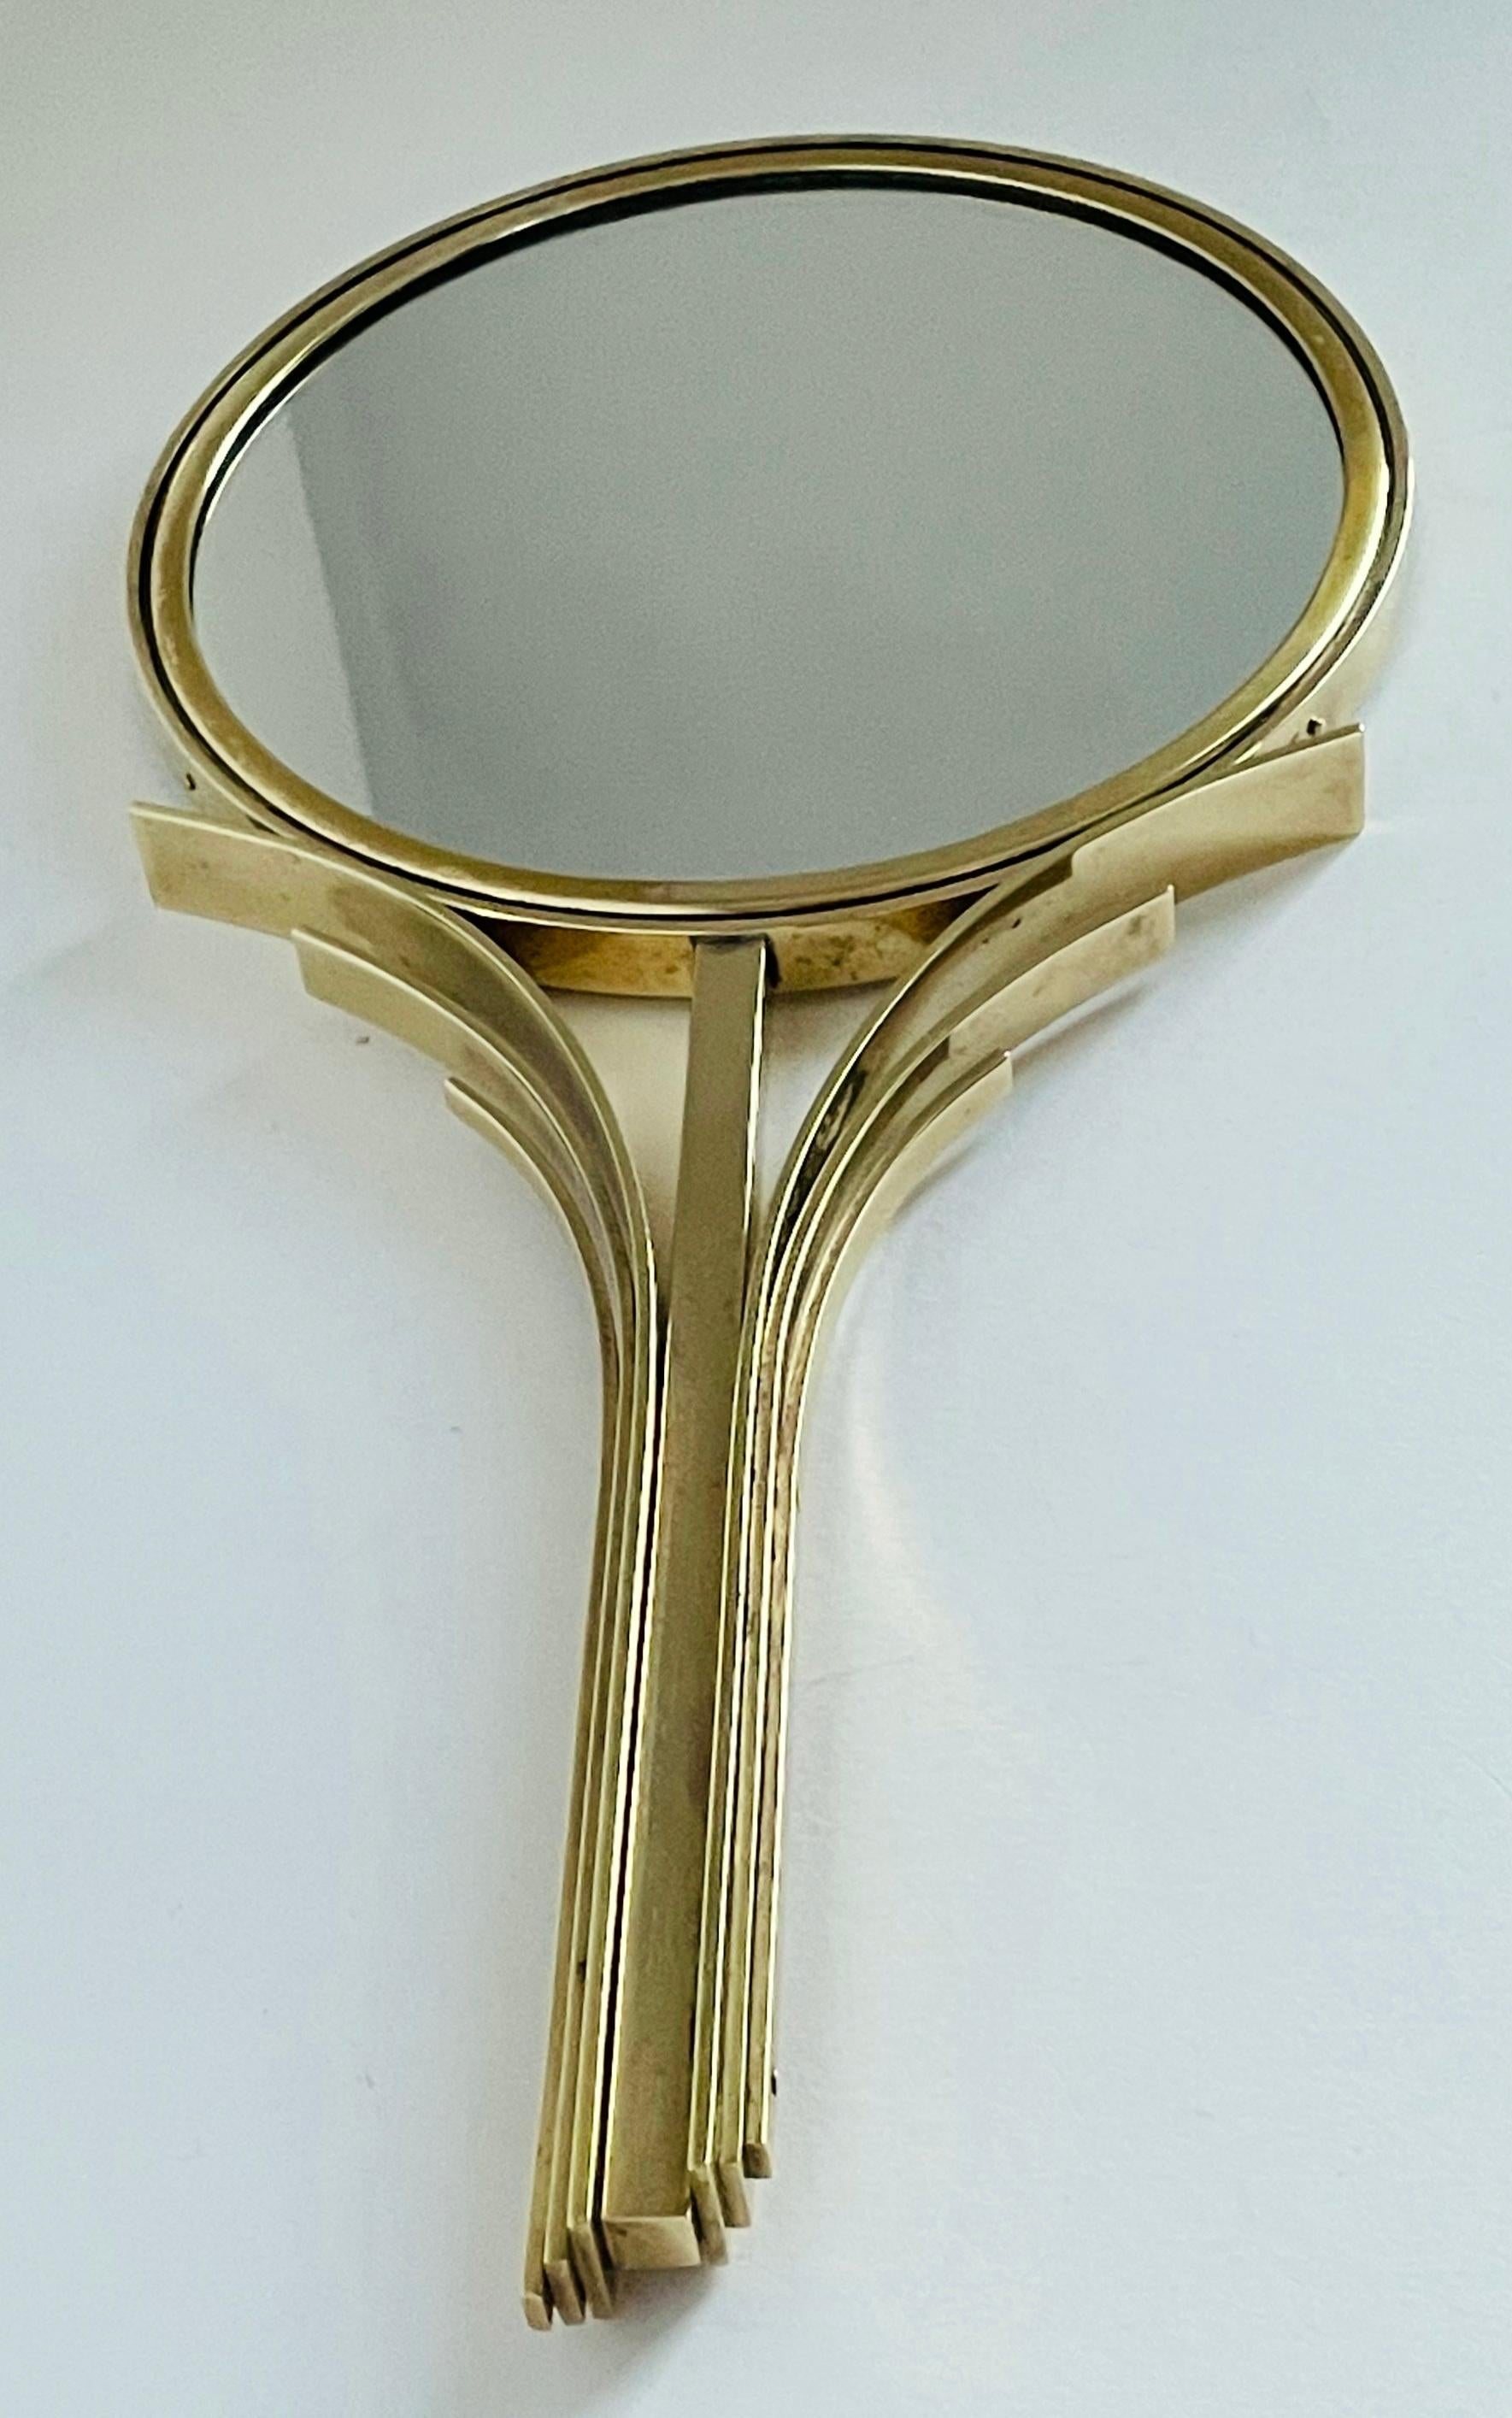 Rare miroir à main Art déco en laiton massif conçu par Ivar Ålenius Björk et produit par Ystad-Metall, Suède, dans les années 1930. 
Dimensions : largeur 16 cm, hauteur 32 cm.

